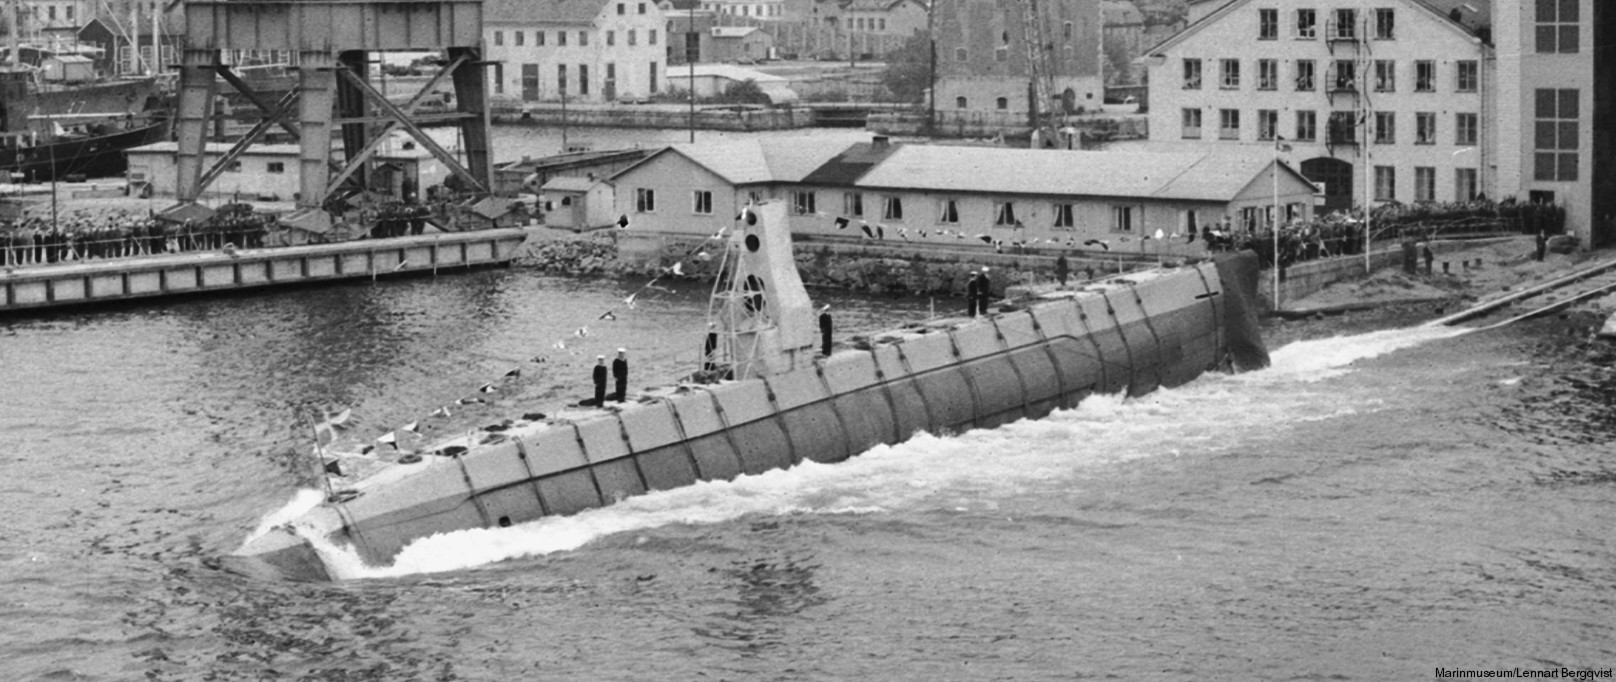 hms hswms gripen draken a12 class attack submarine ubåt swedish navy svenska marinen försvarsmakten 03